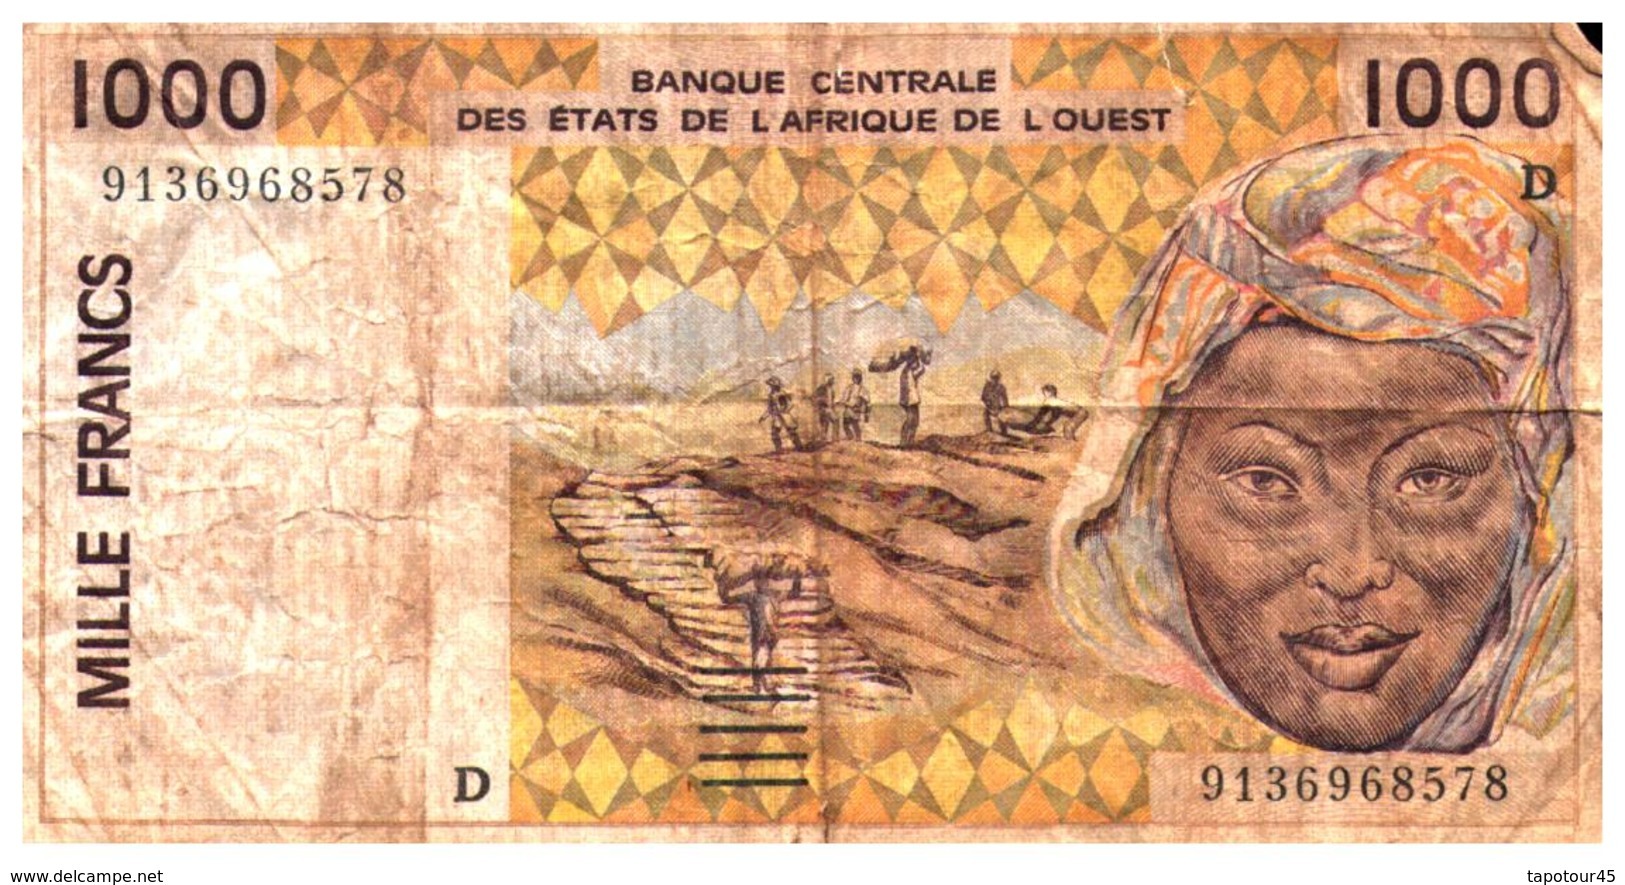 Billets > Autres - Afrique 1000 Francs - Altri – Africa